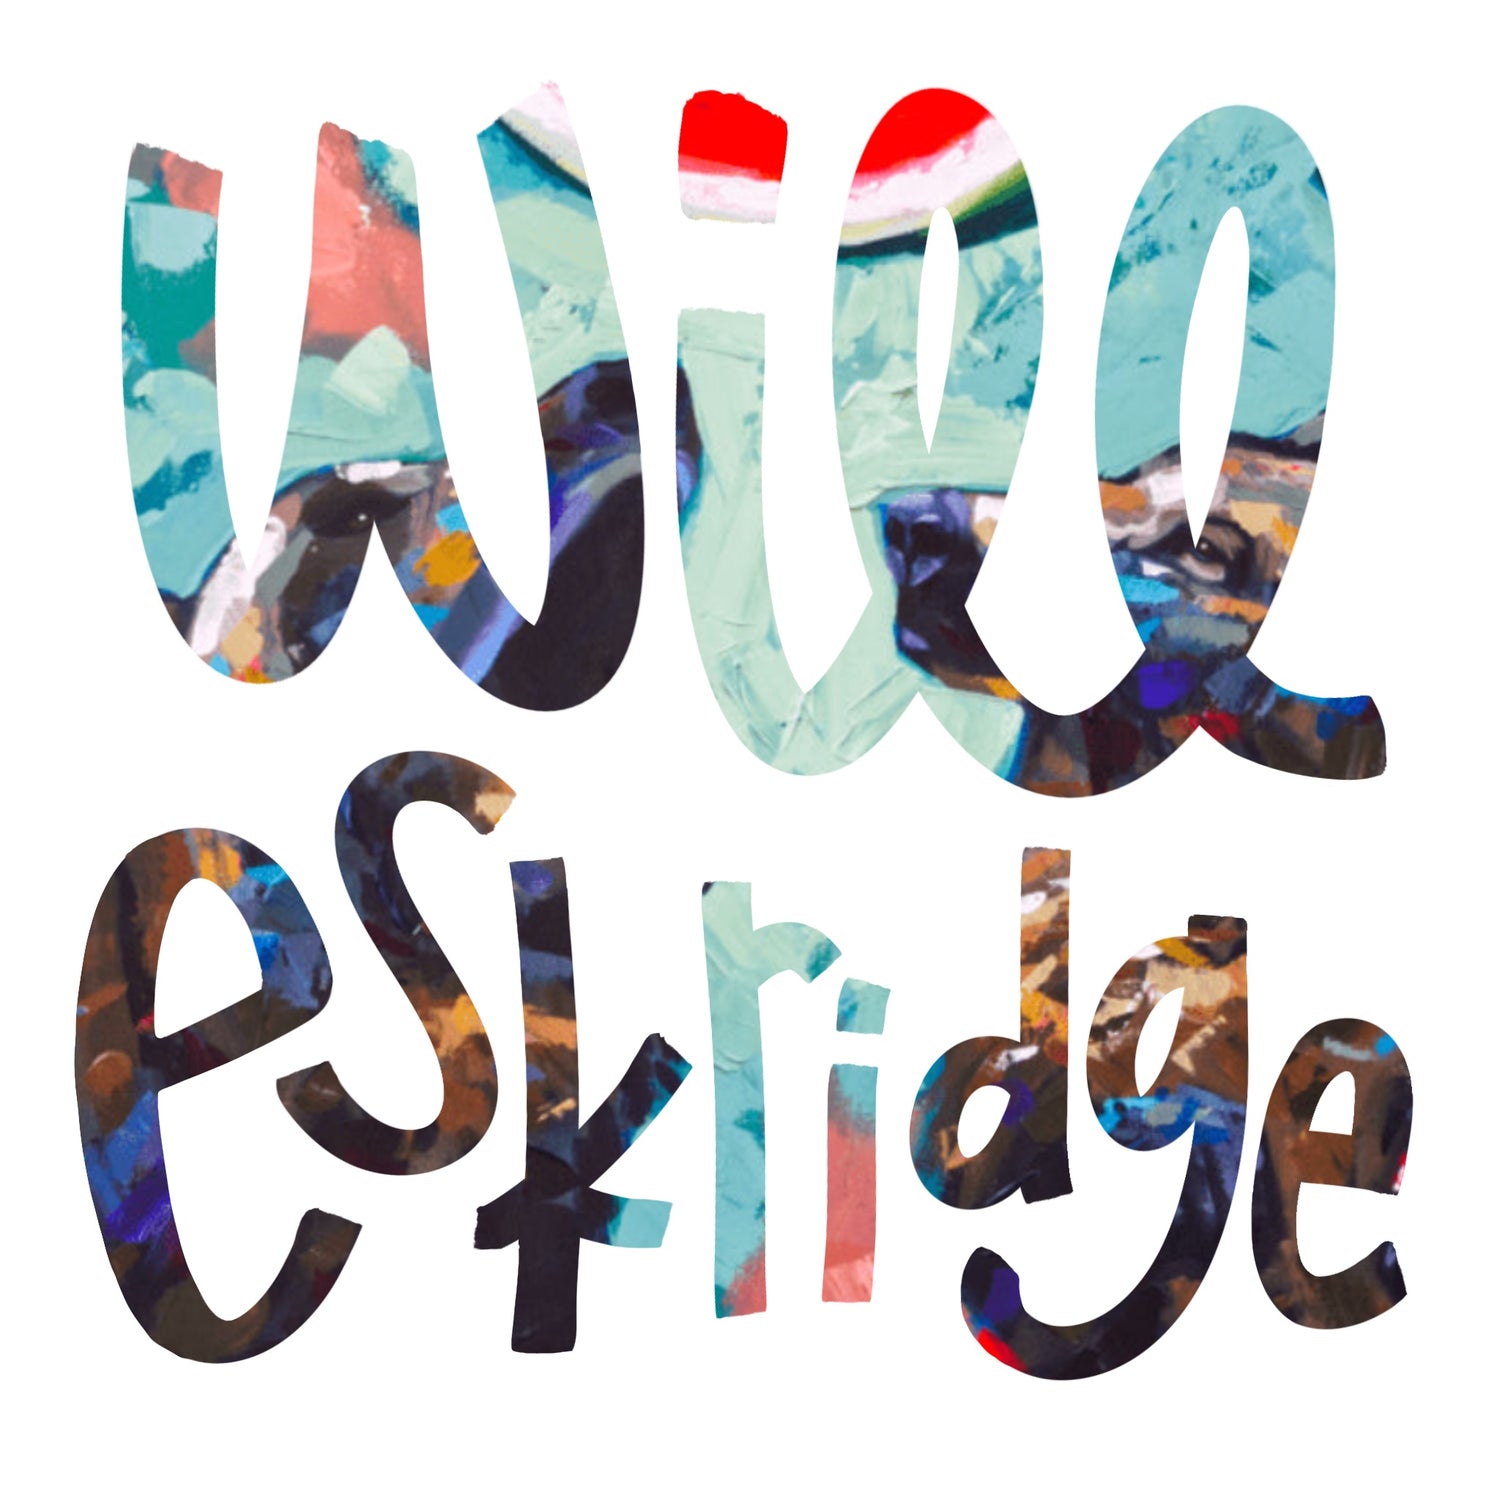 Will Eskridge